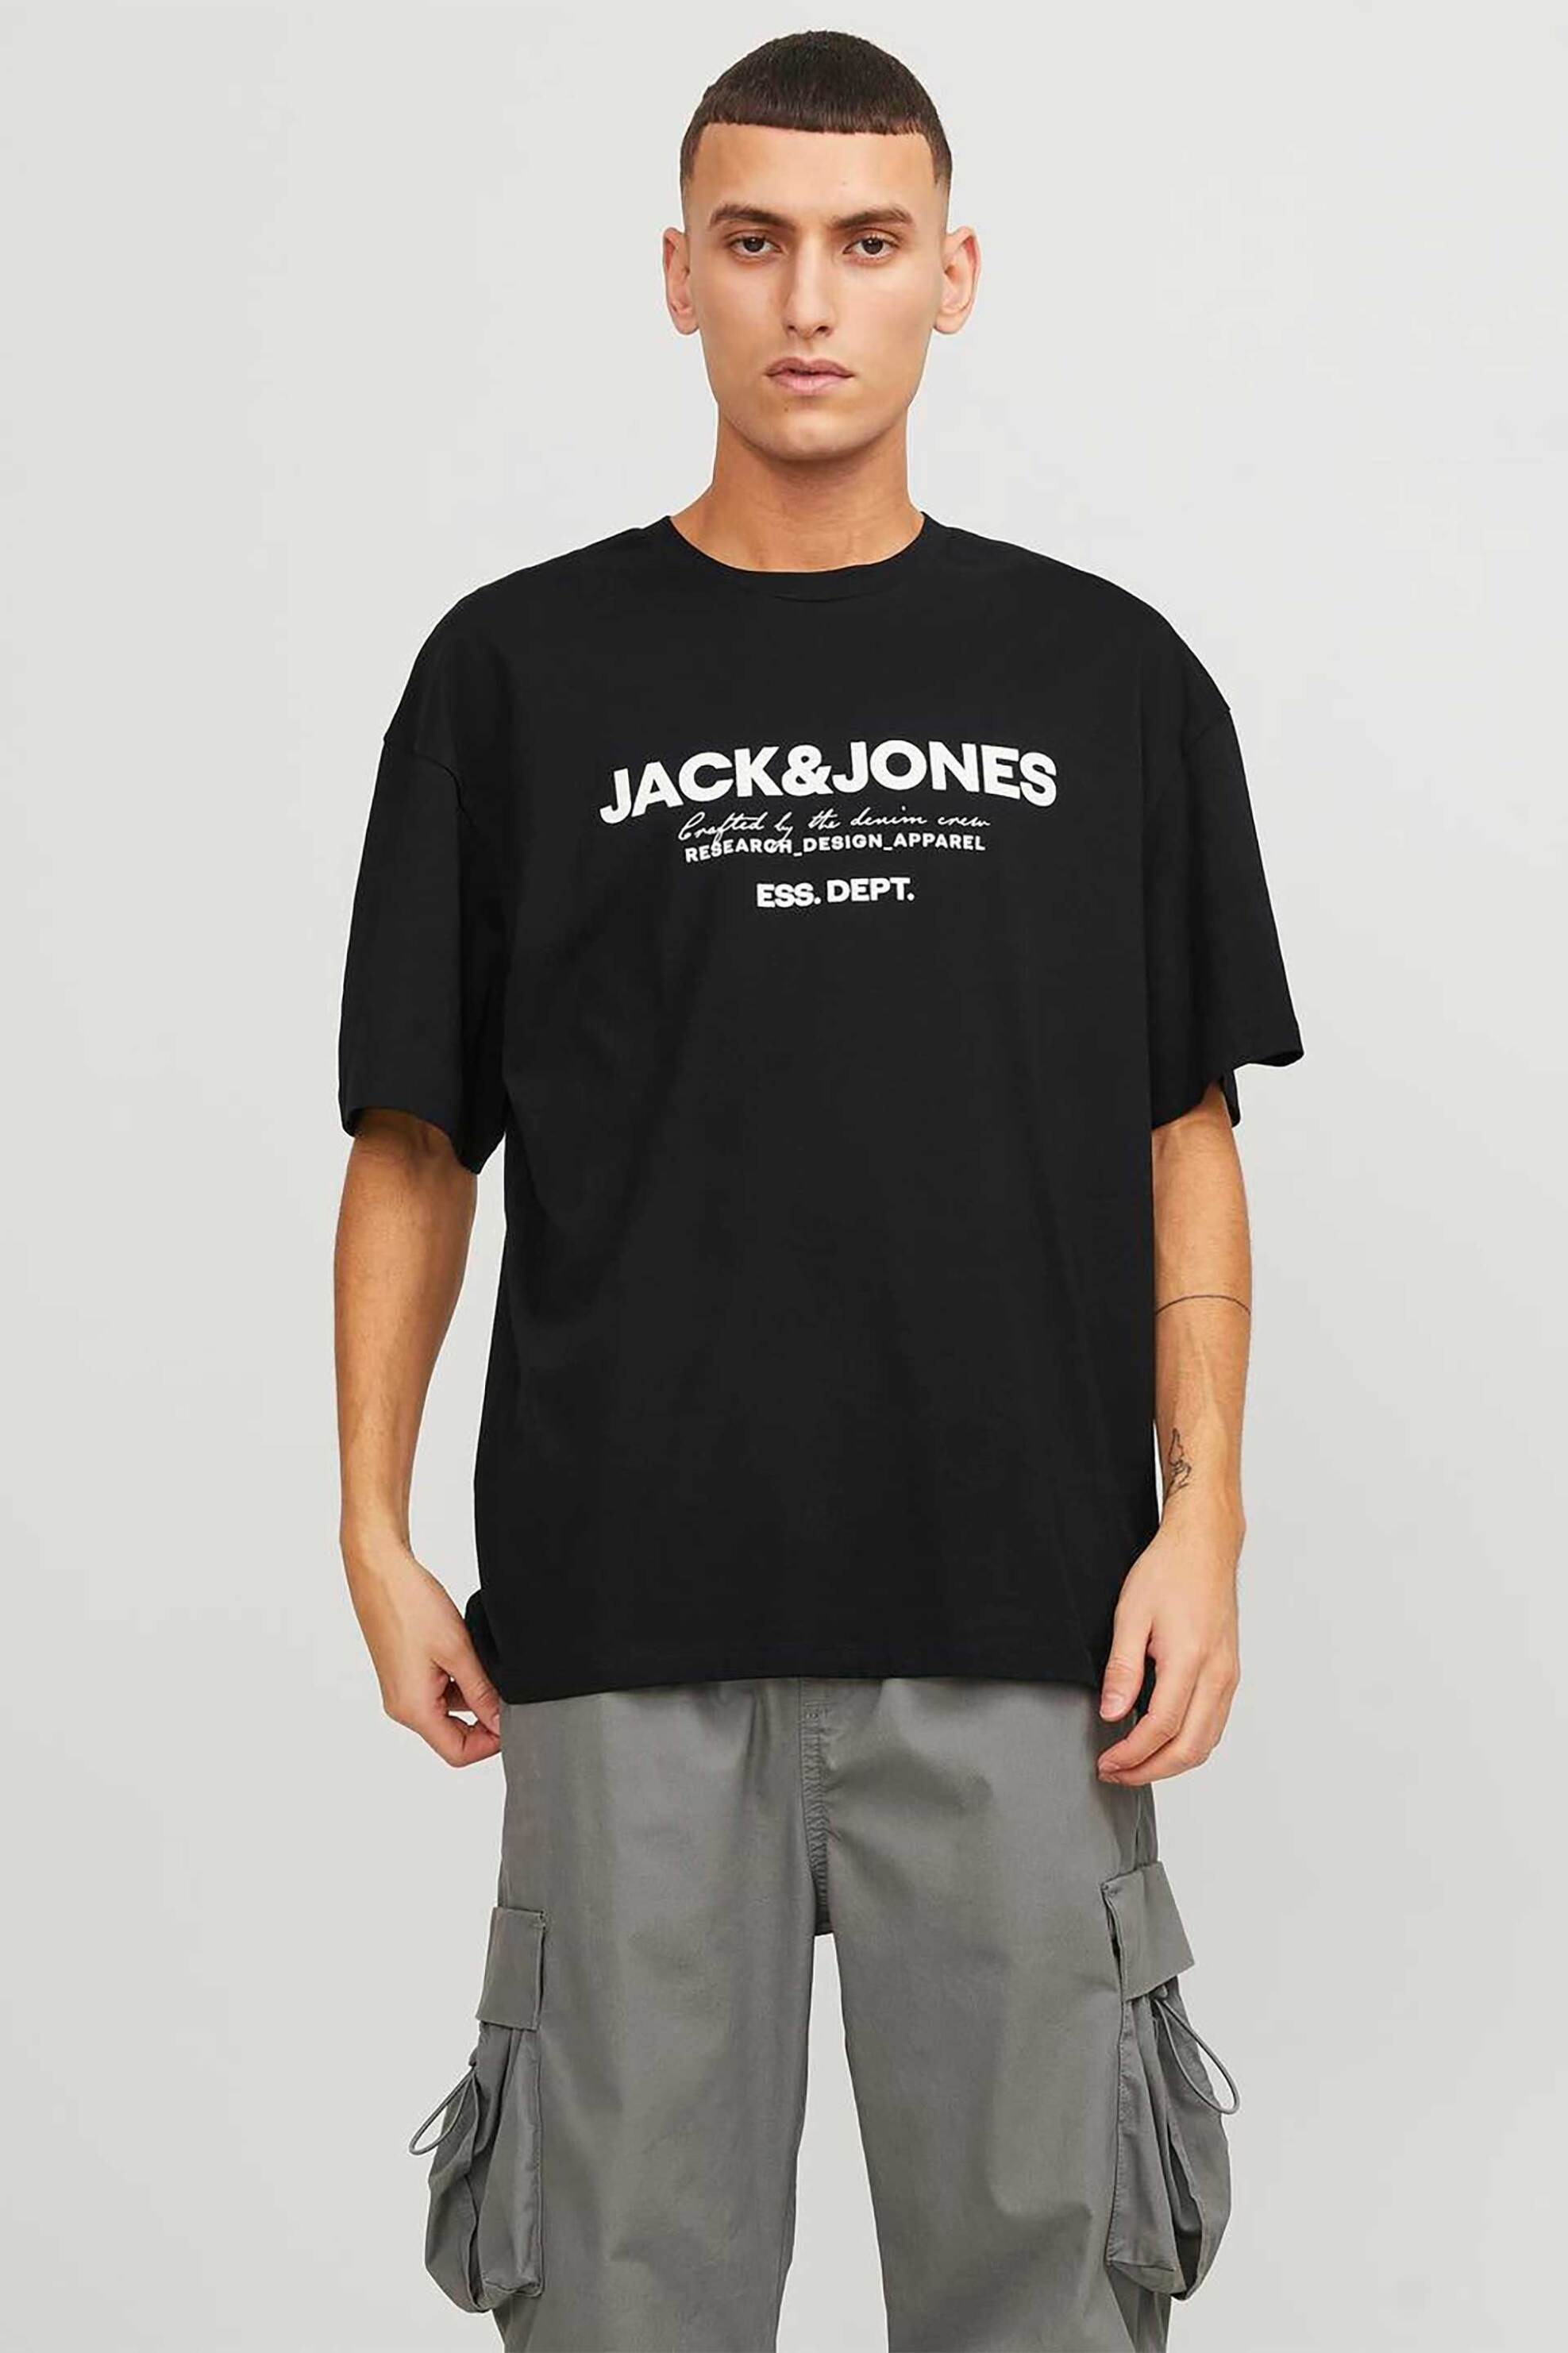 Ανδρική Μόδα > Ανδρικά Ρούχα > Ανδρικές Μπλούζες > Ανδρικά T-Shirts JACK & JONES ανδρικό T-shirt με logo print και lettering Relaxed Fit - 12247782 Μαύρο